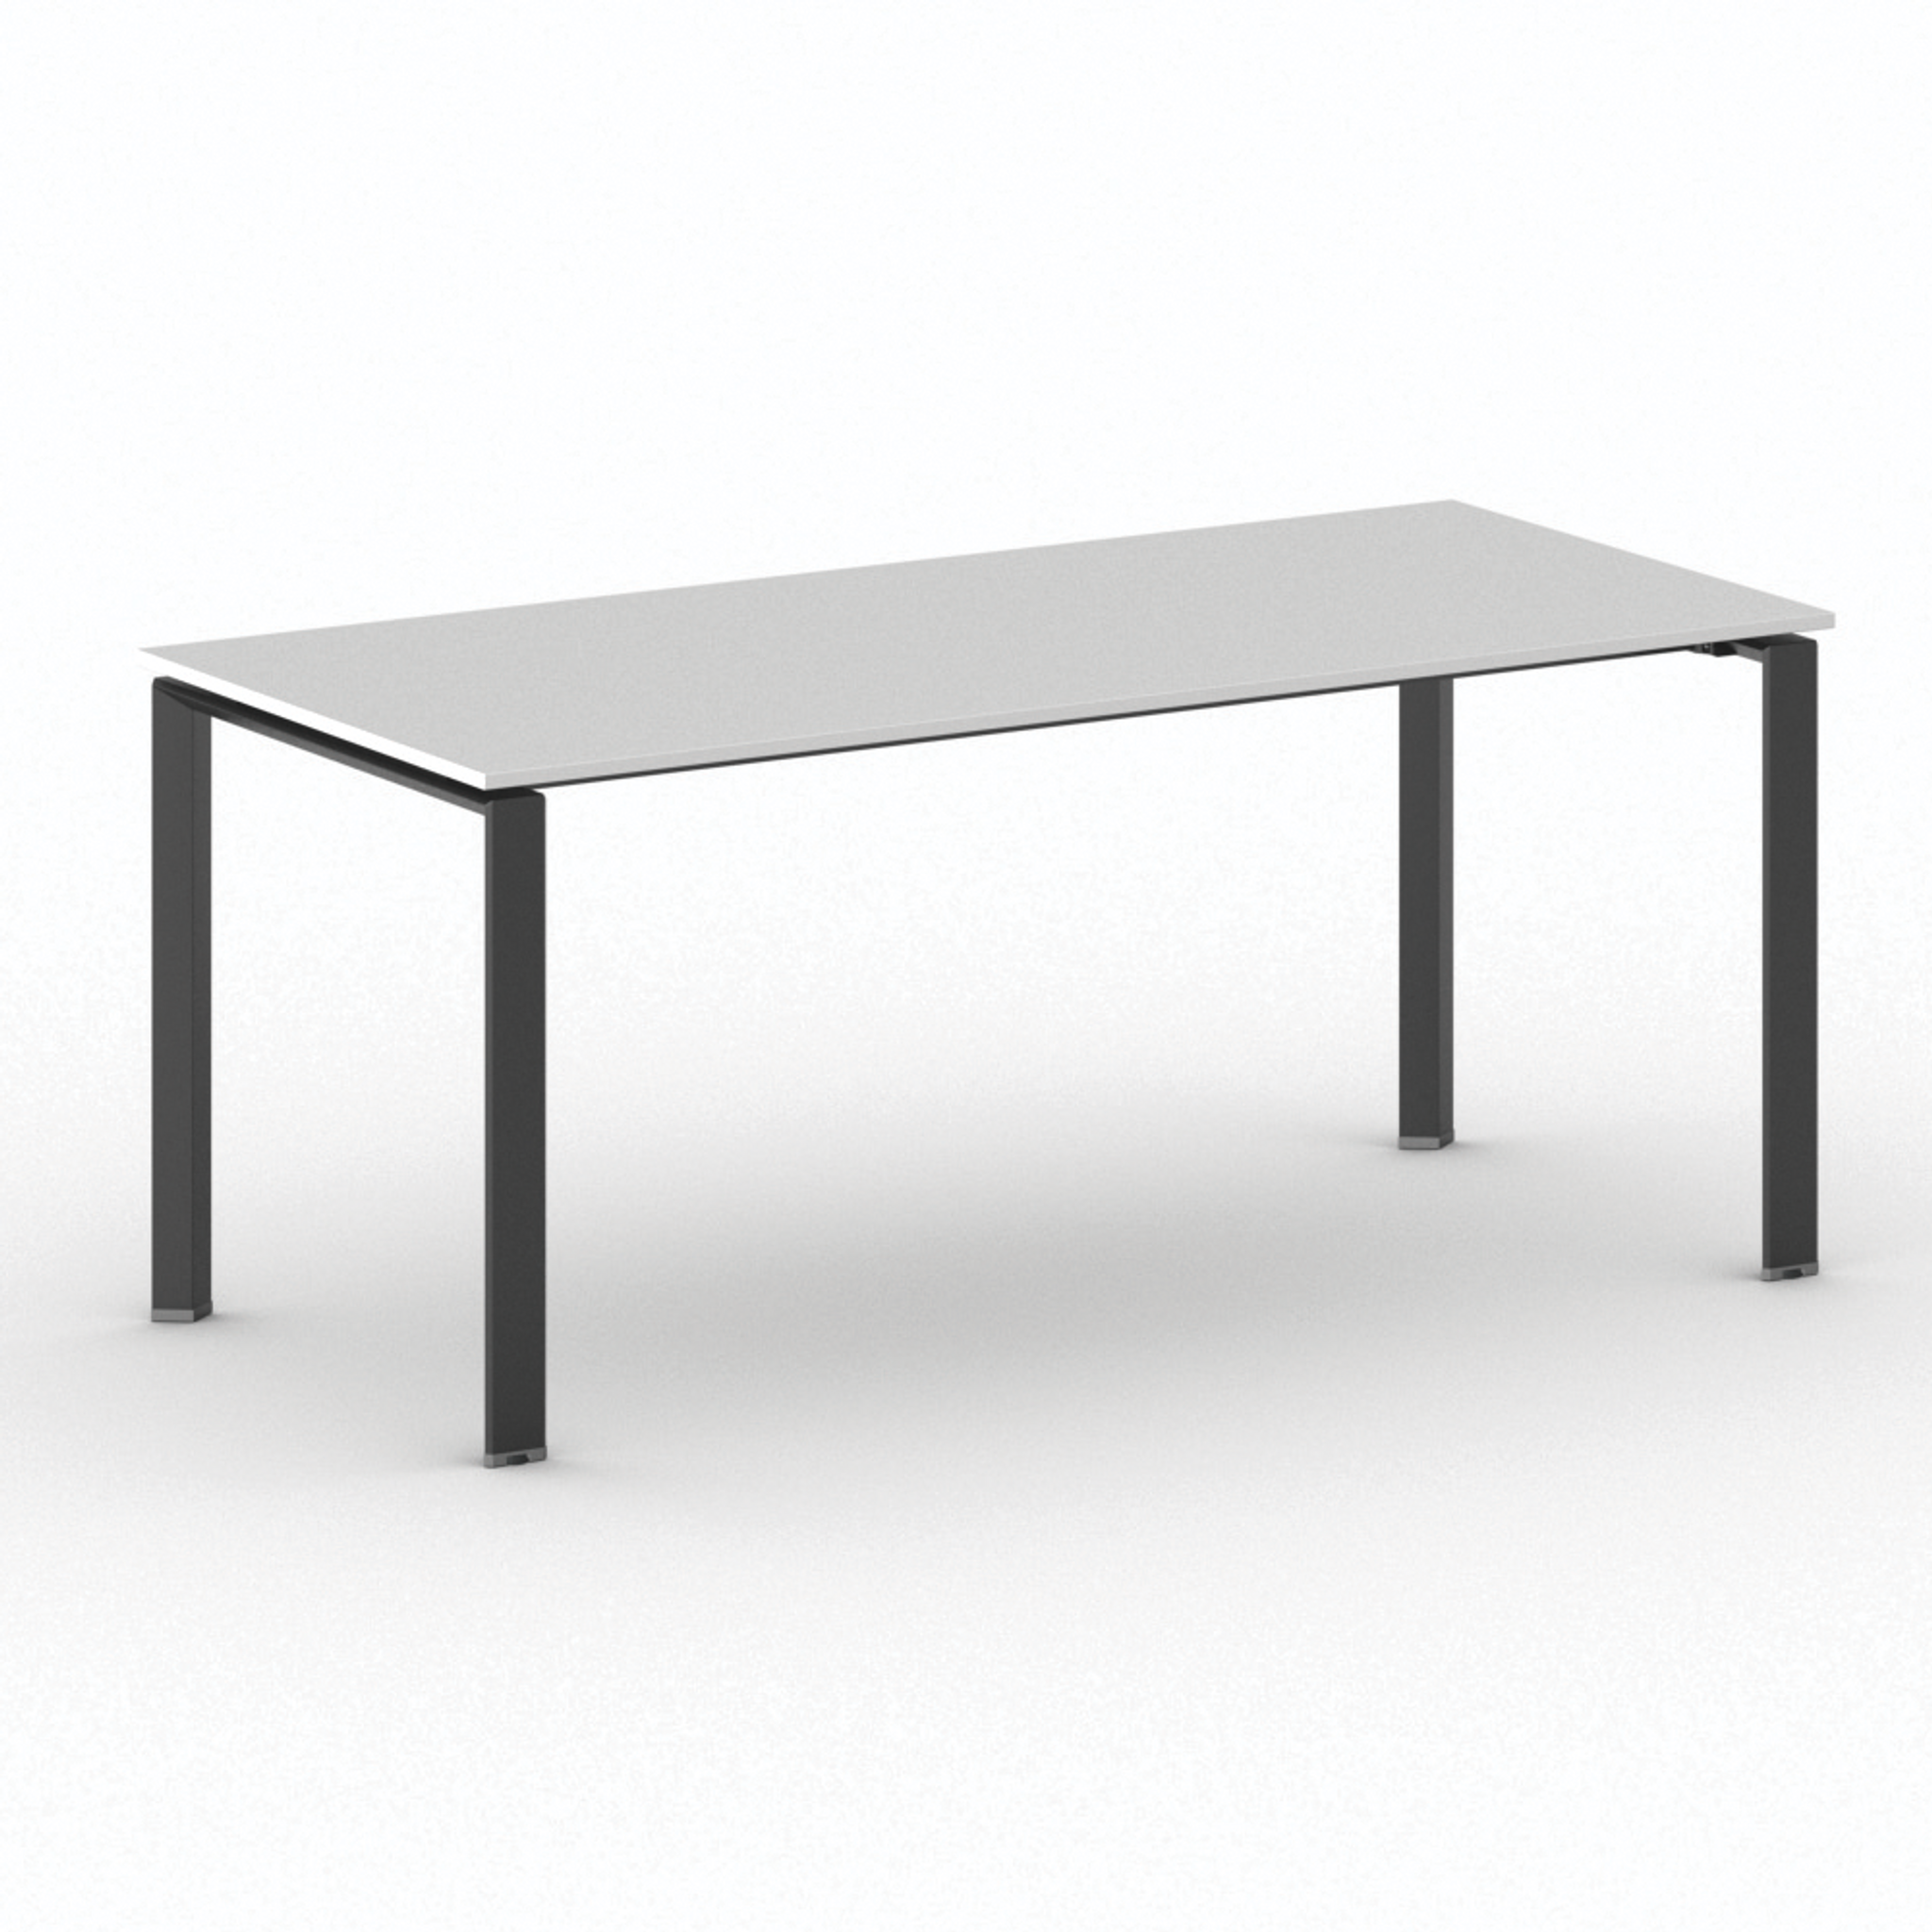 Konferenztisch, Besprechungstisch INFINITY 180x90 cm, weiß, schwarzes Fußgestell